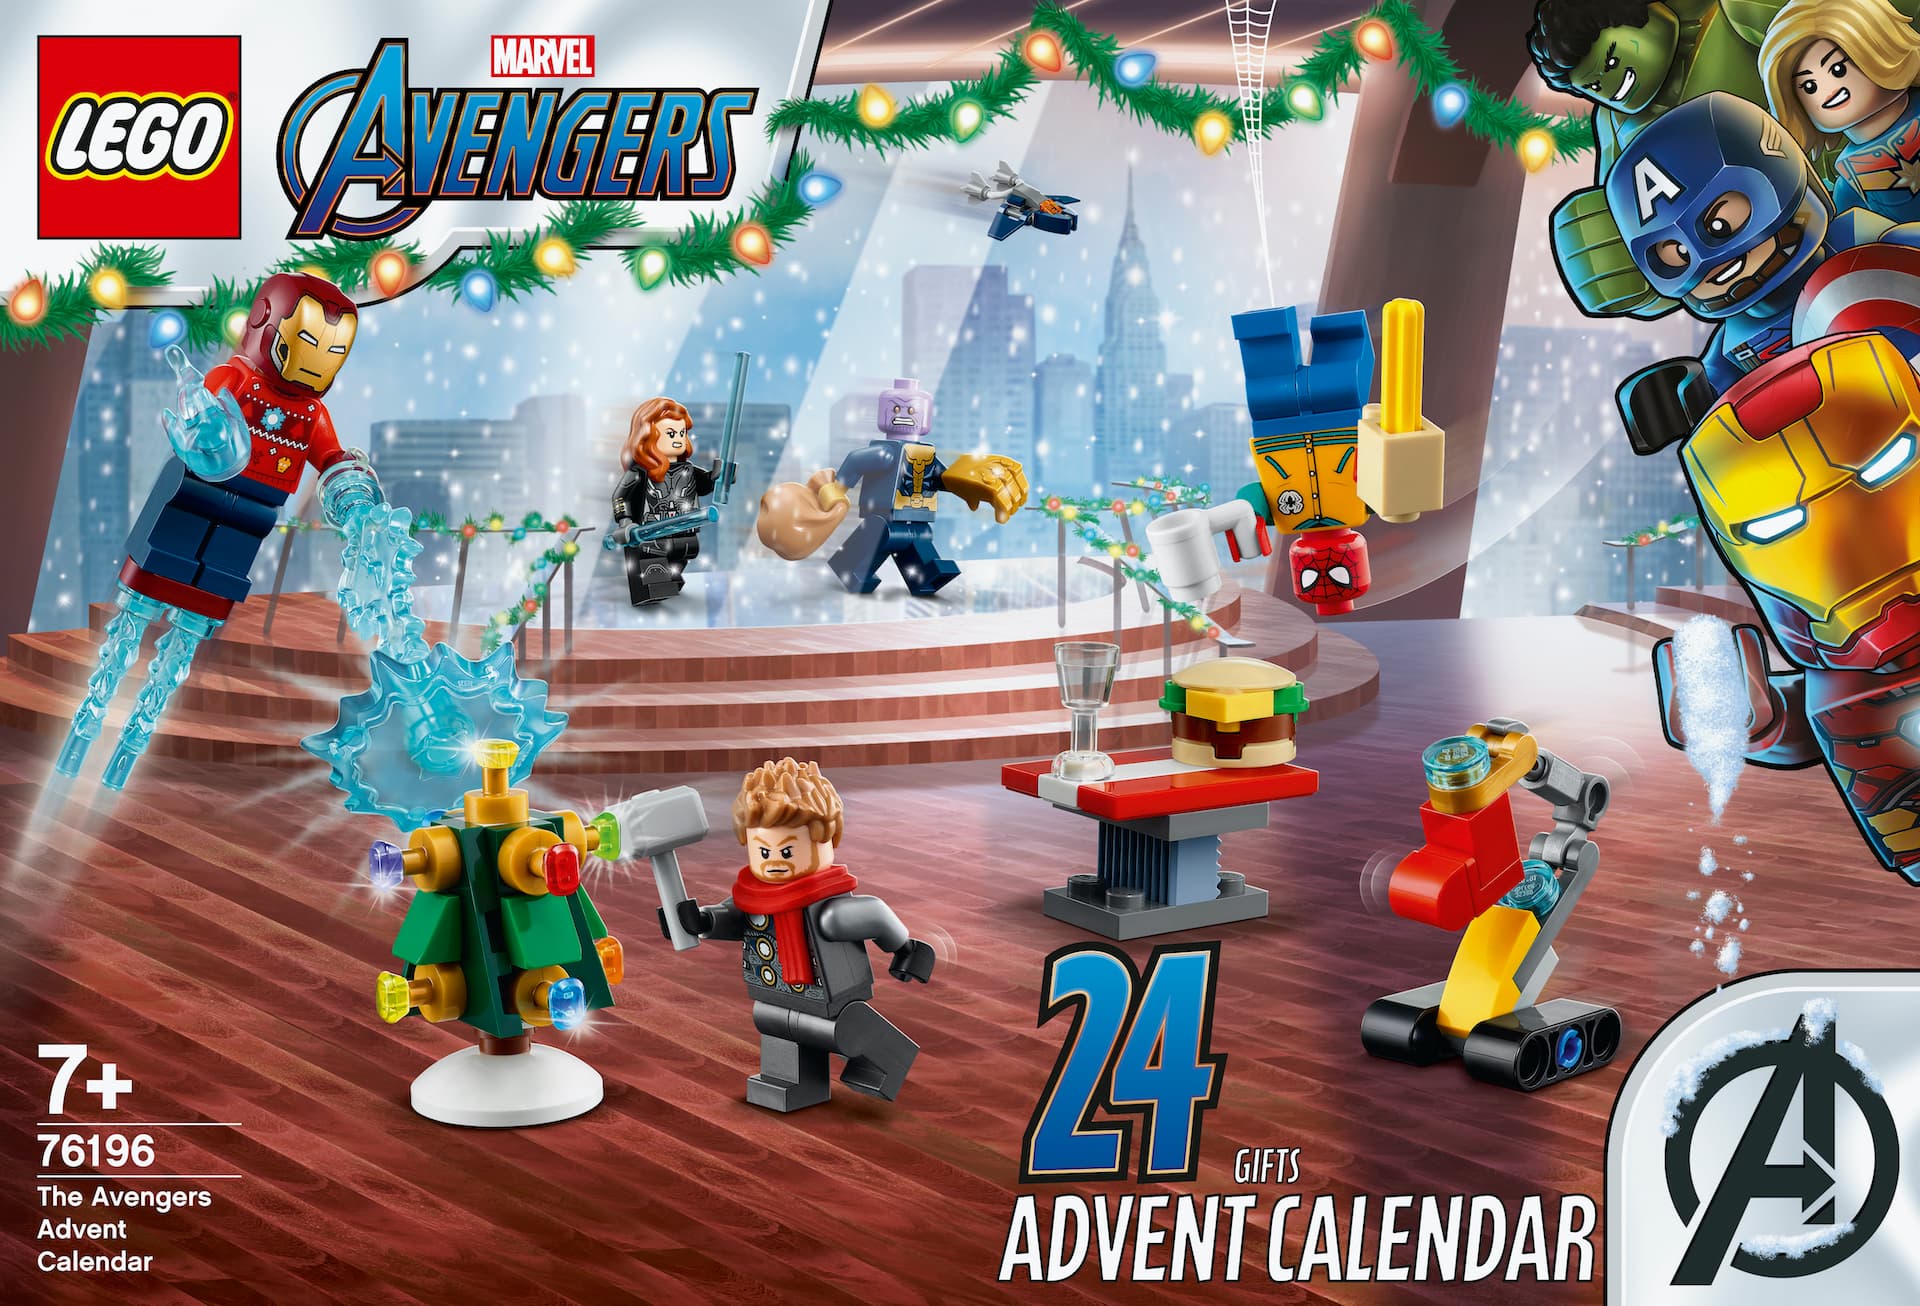 Marvel Avengers Kalender 2021 